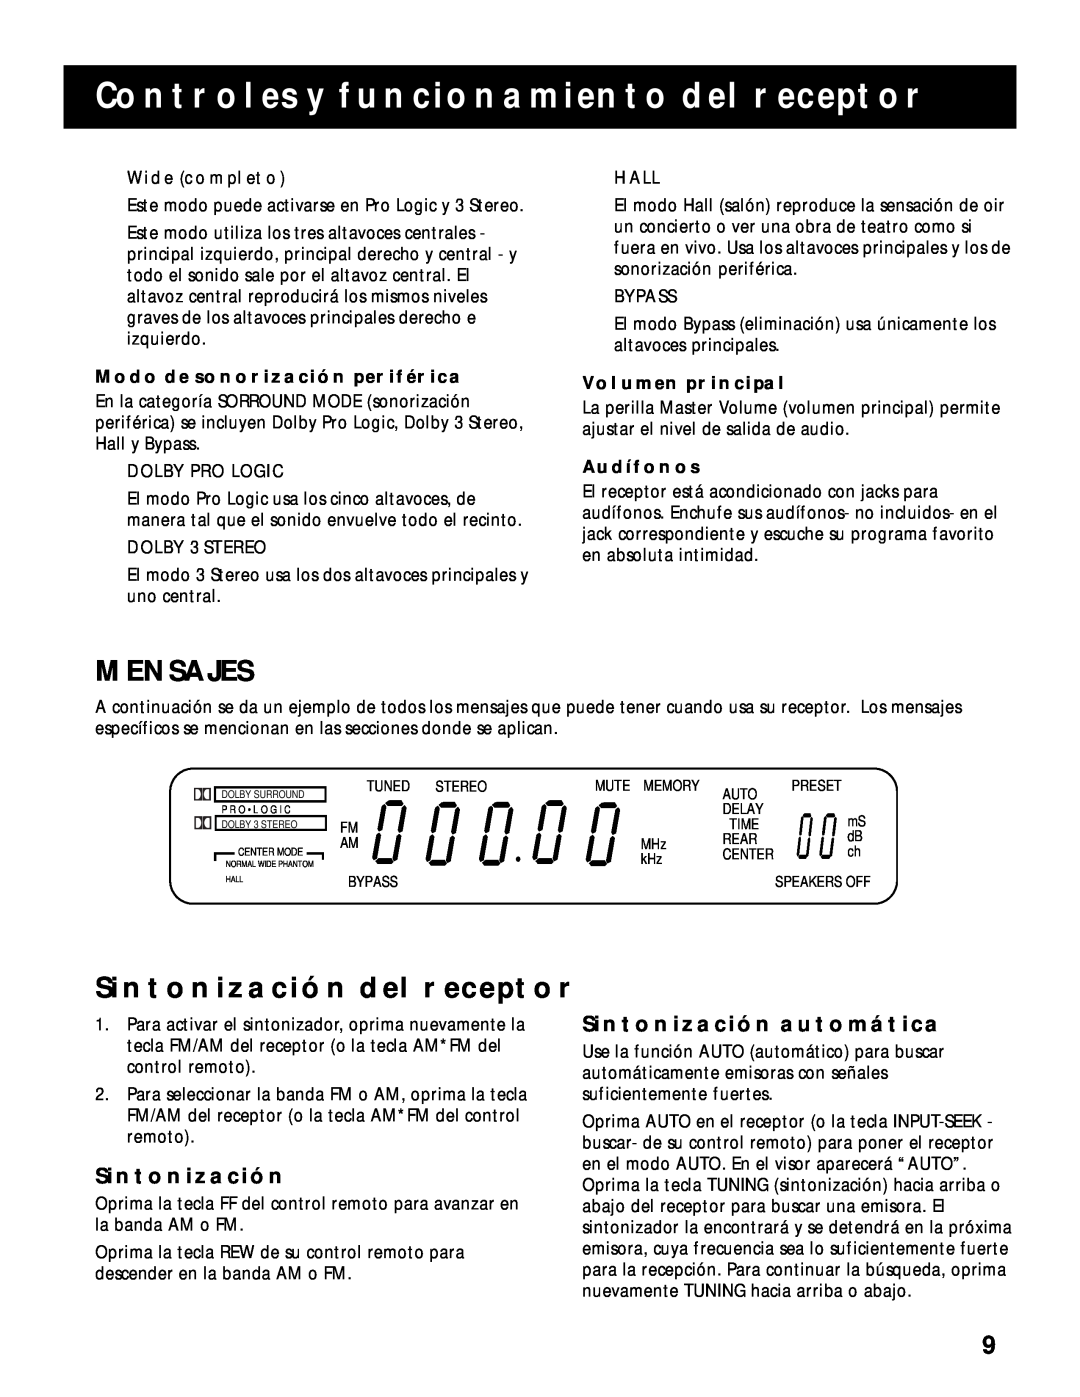 RCA RV-9978 manual Mensajes, Sintonización Del Receptor, Sintonización Automática, Controles Y Funcionamiento Del Receptor 